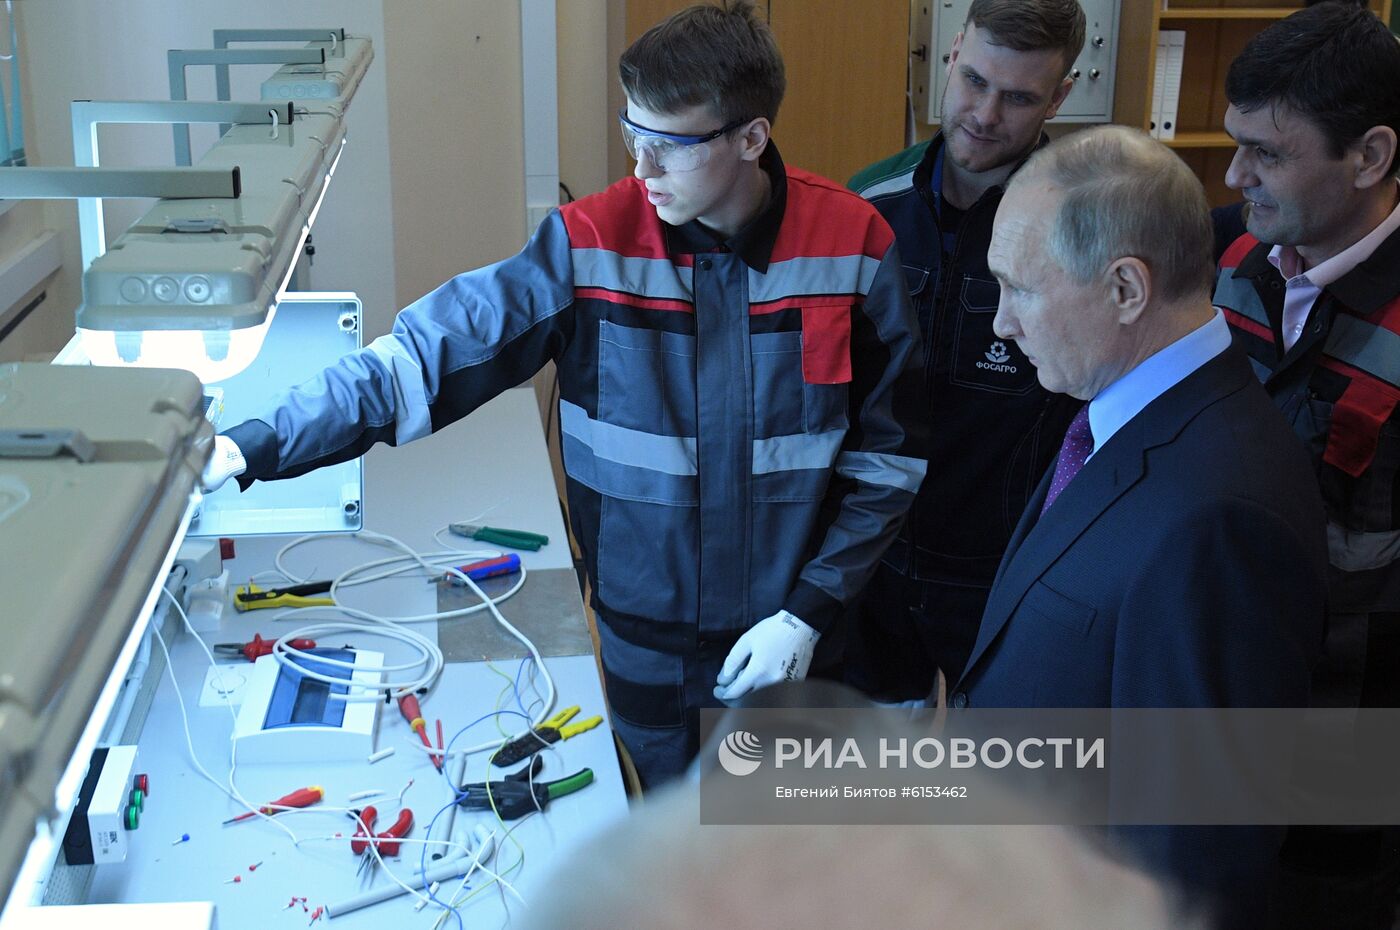 Рабочая поездка президента РФ В. Путина в Череповец